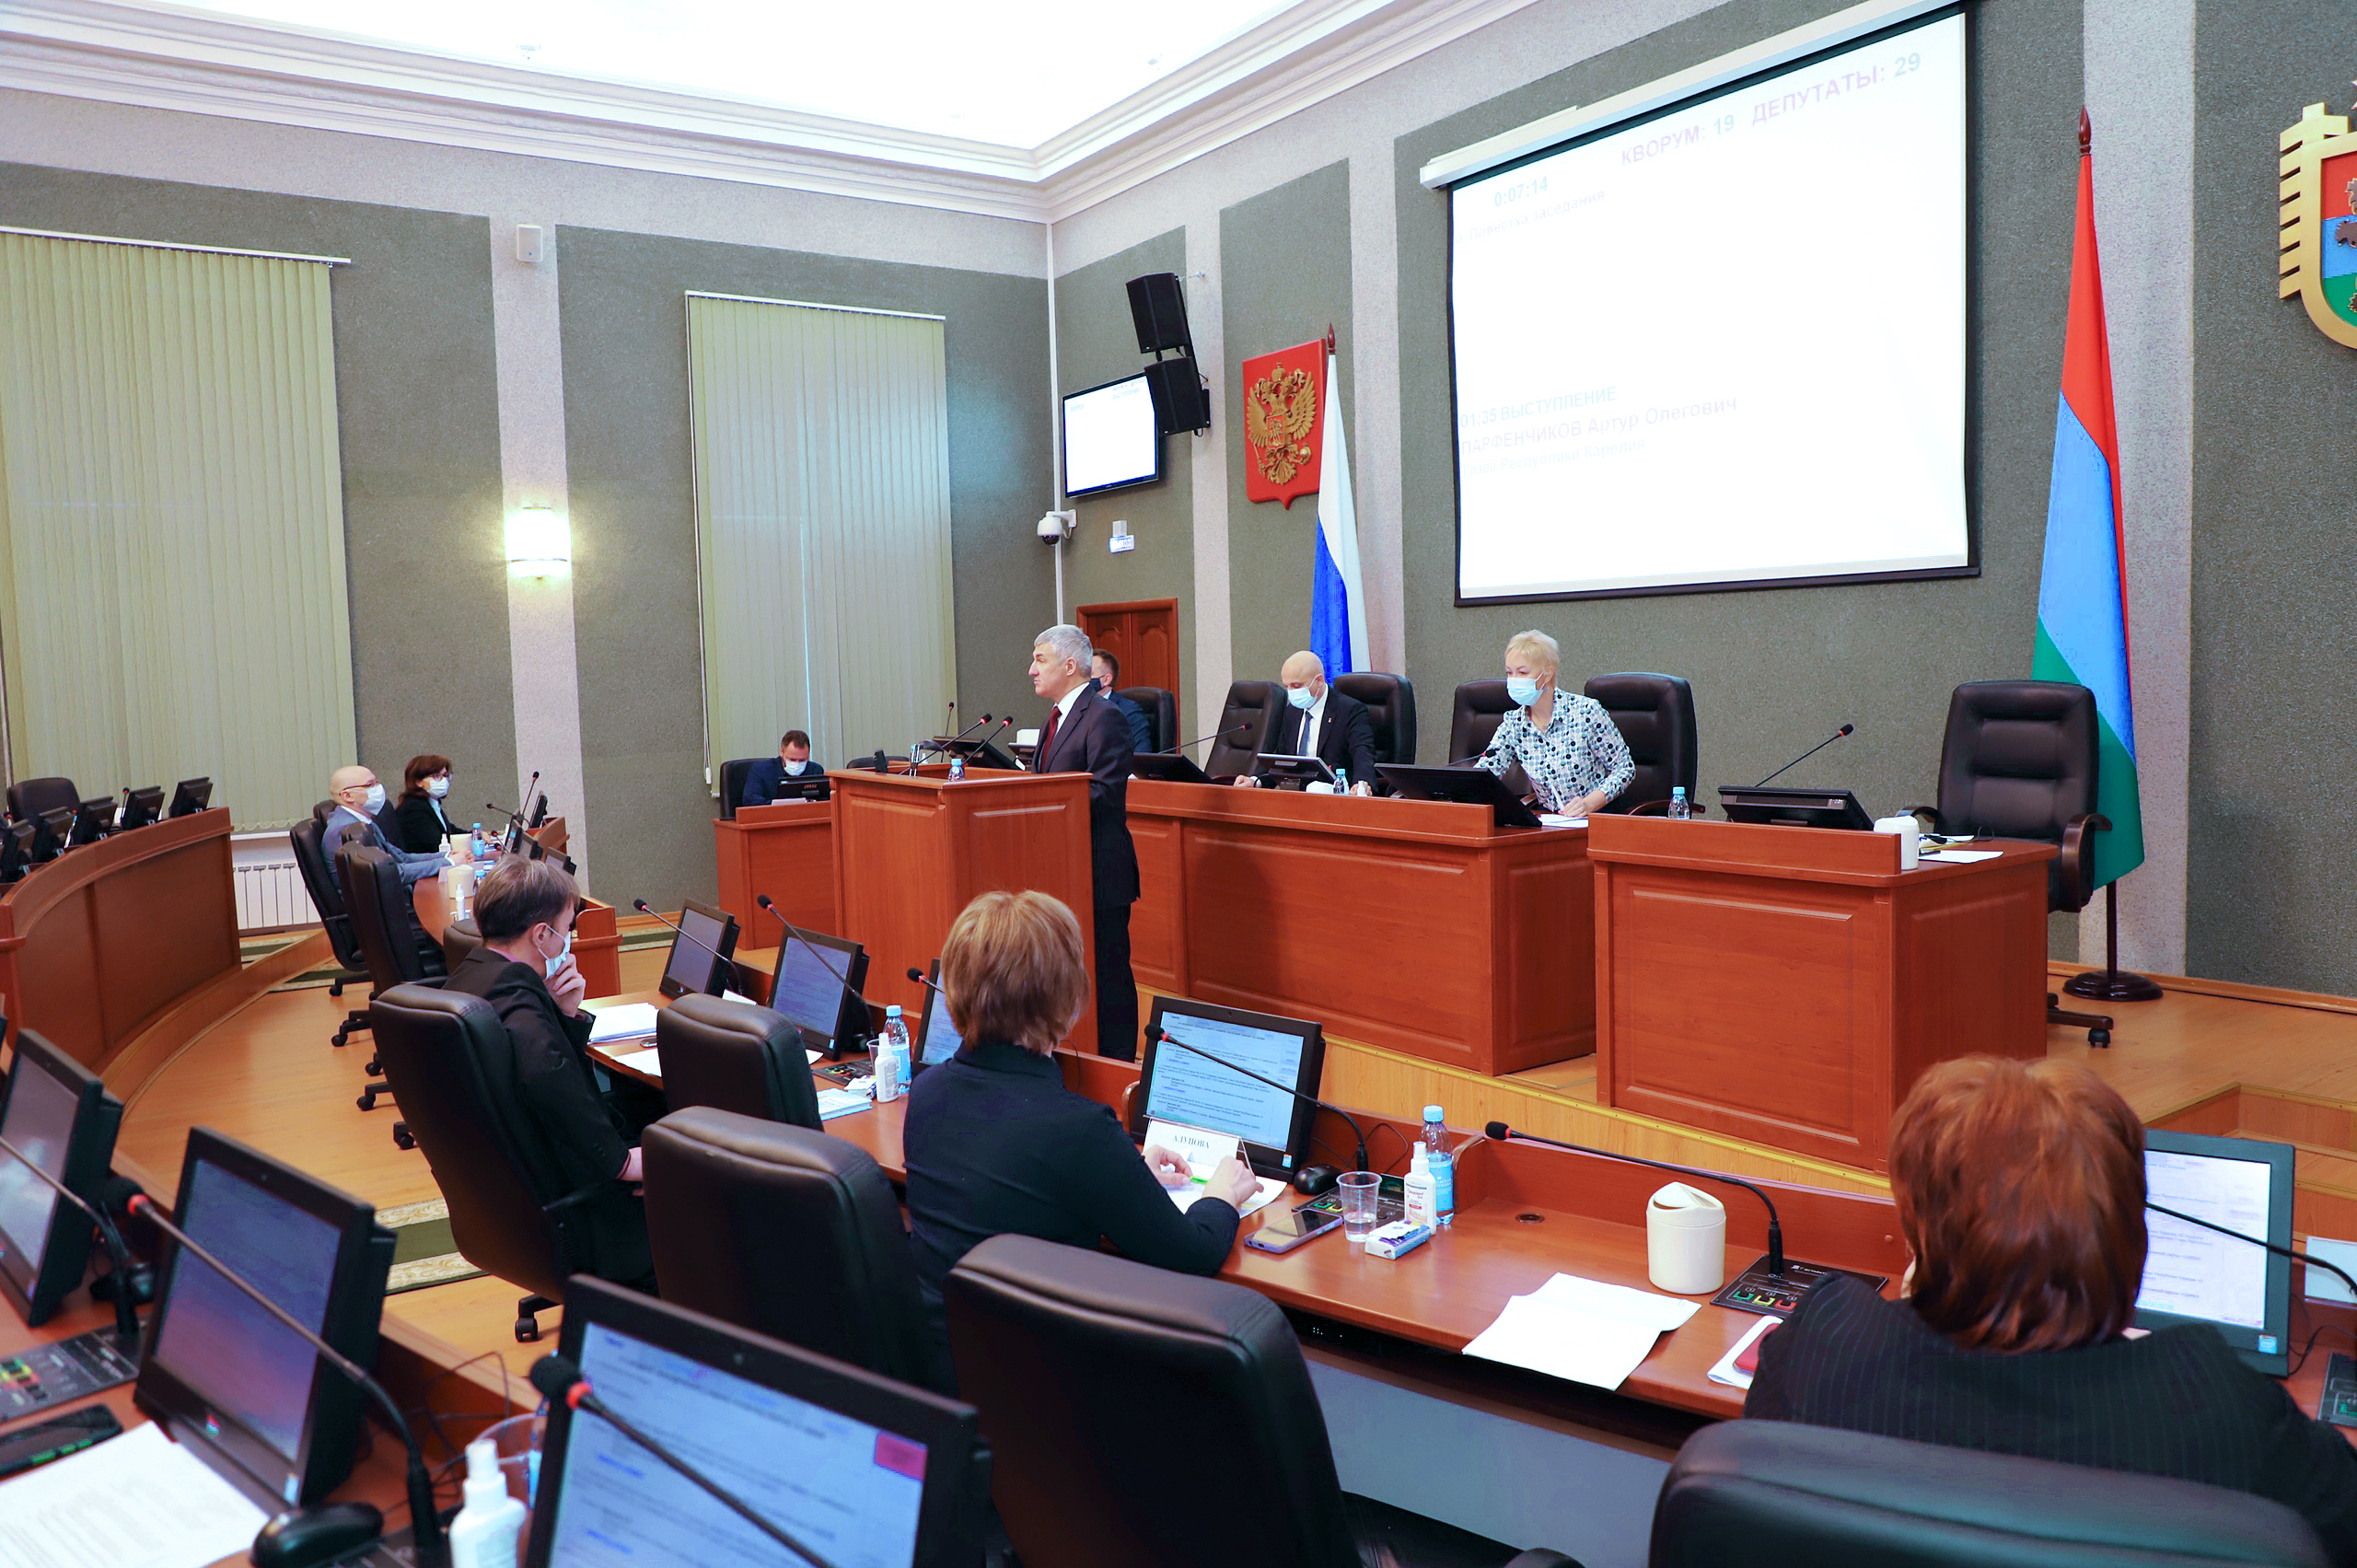 Законодательное Собрание поддержало важные изменения в бюджет региона, предложенные главой Карелии